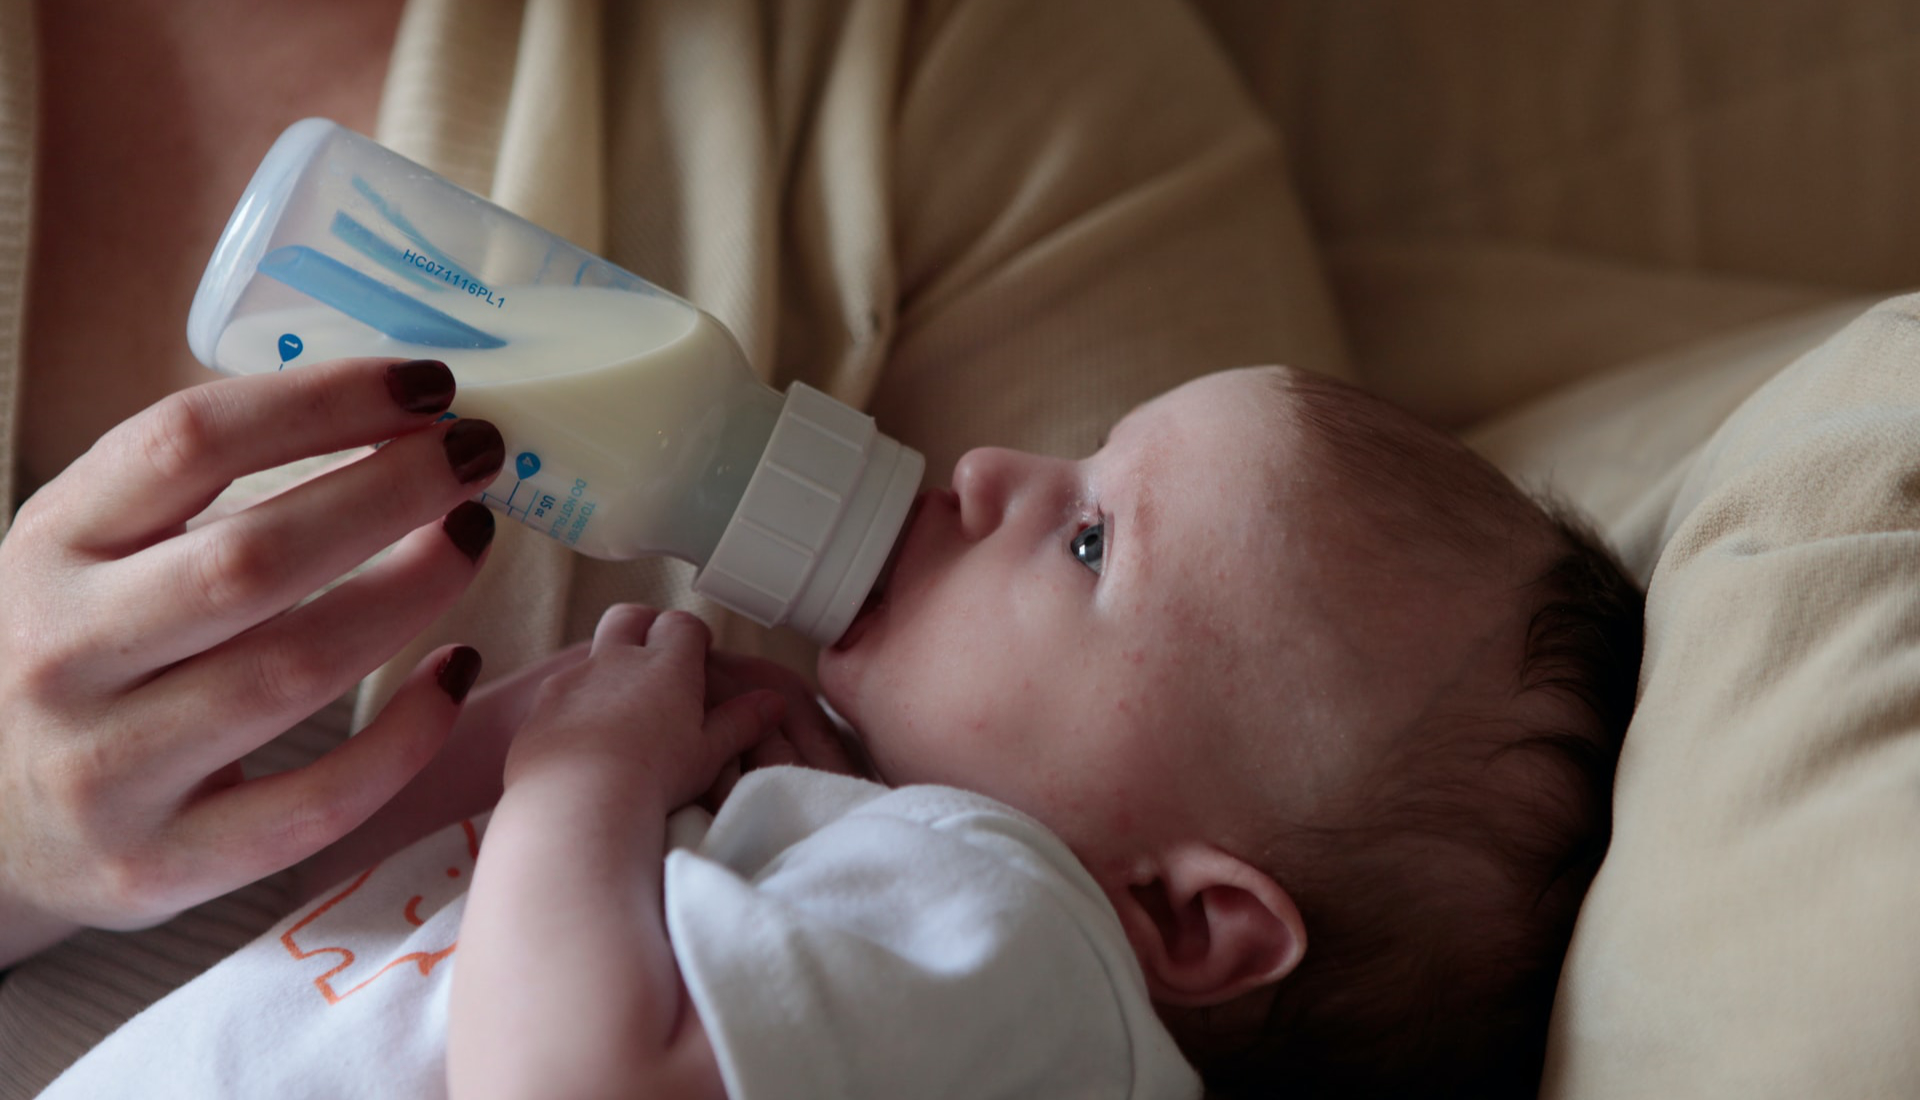 Mulheres expostas a marketing que promove o leite artificial abandonam mais o aleitamento